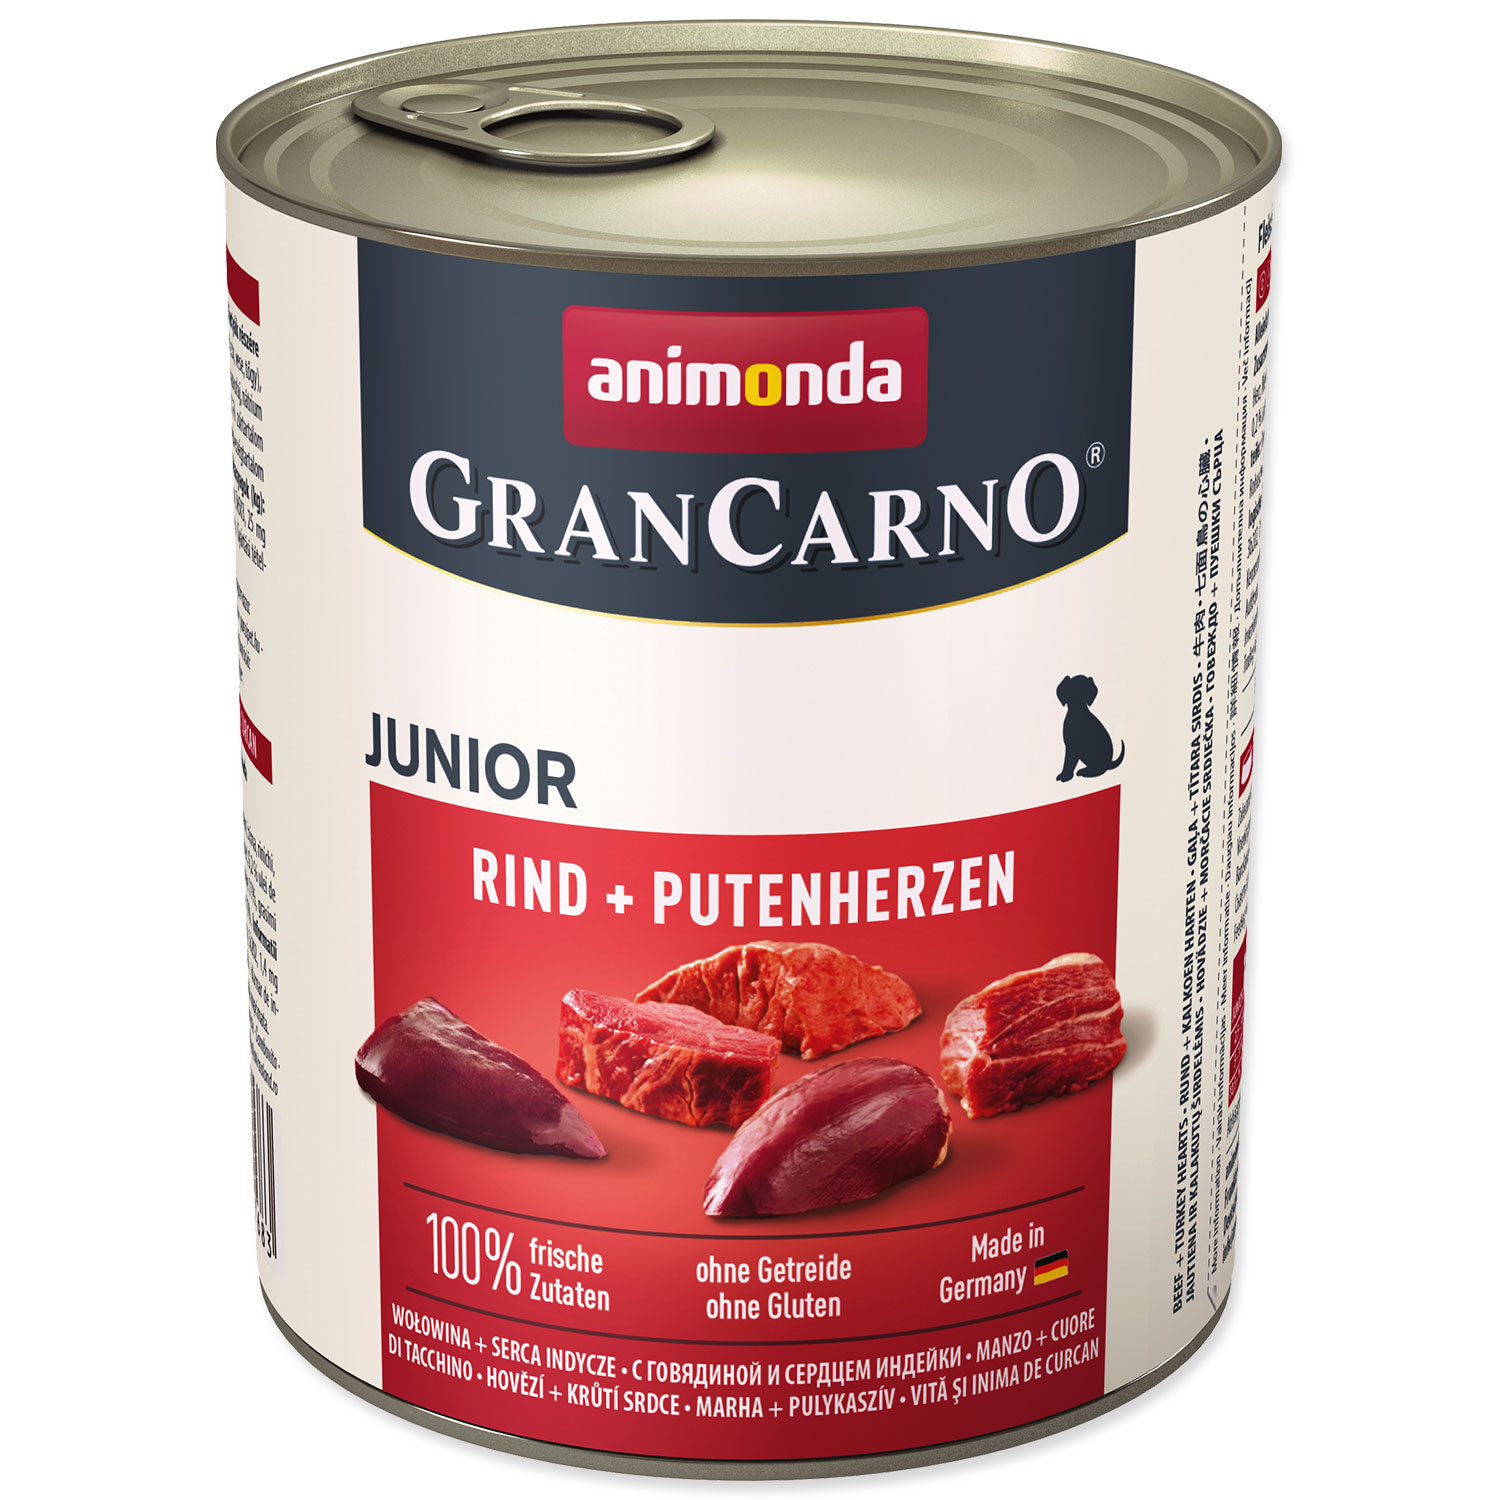 Konzerva ANIMONDA Gran Carno Junior hovězí + krůtí srdce